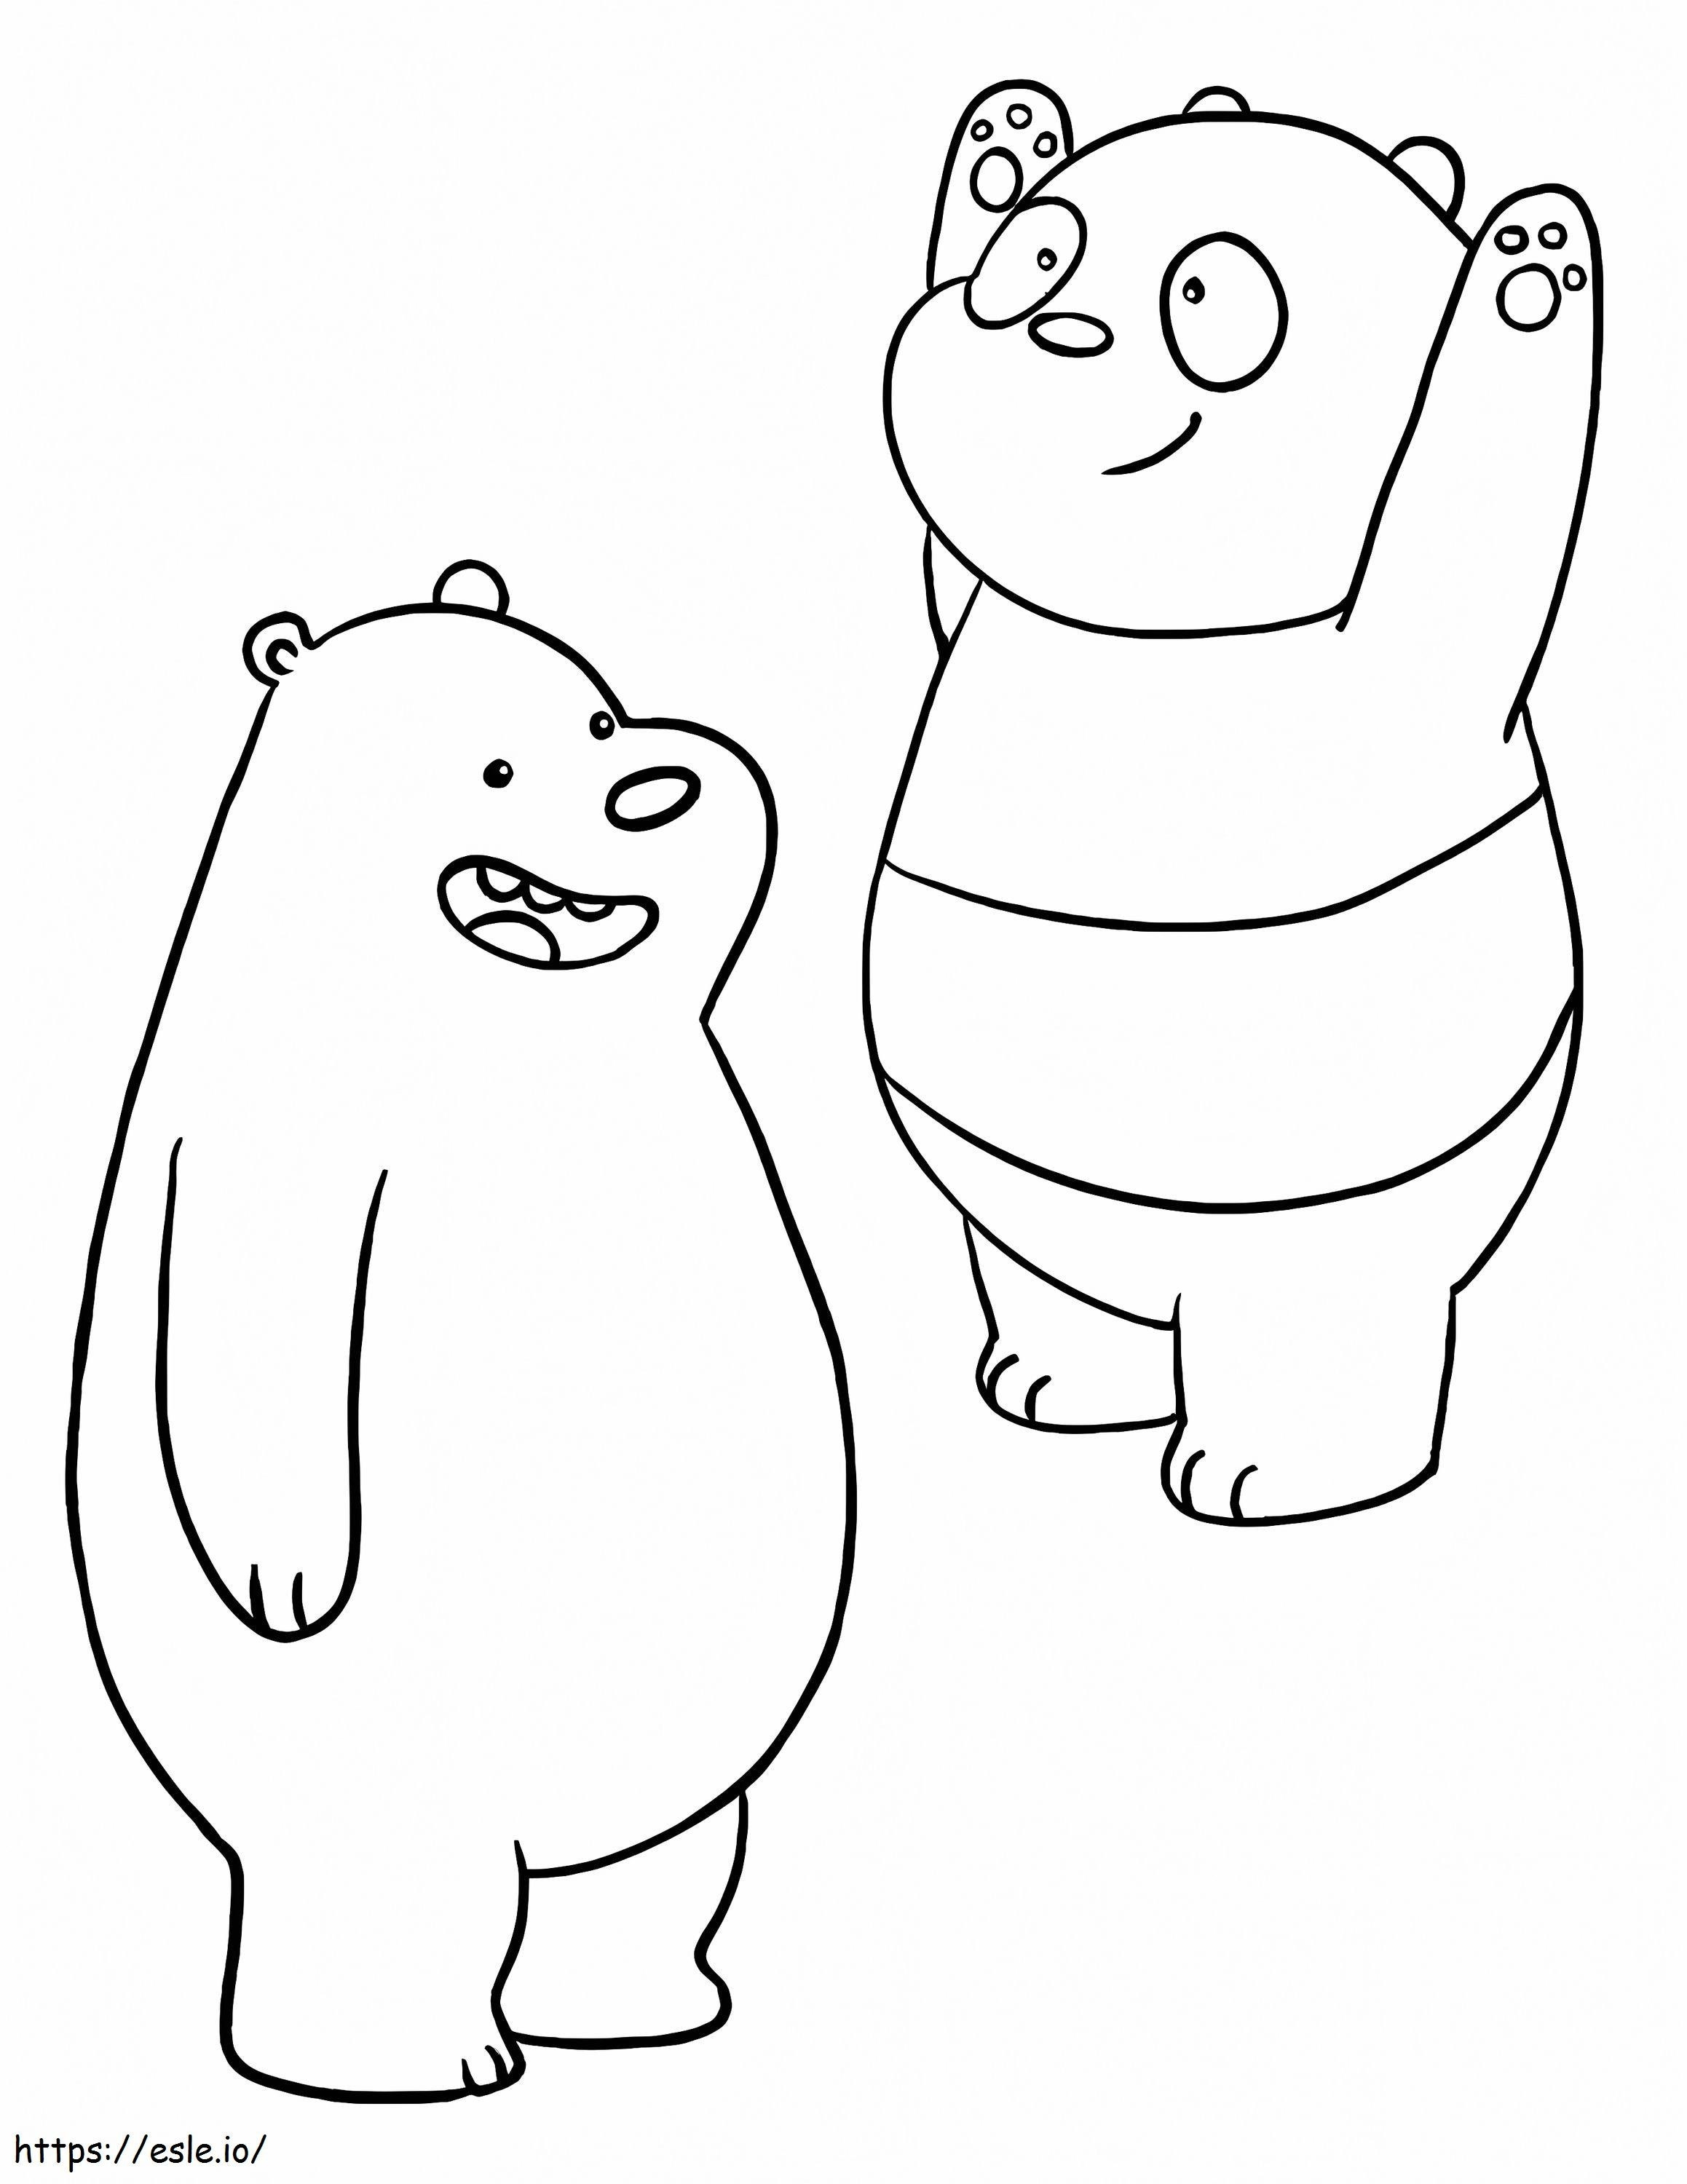 Ursul Brun și Panda de colorat